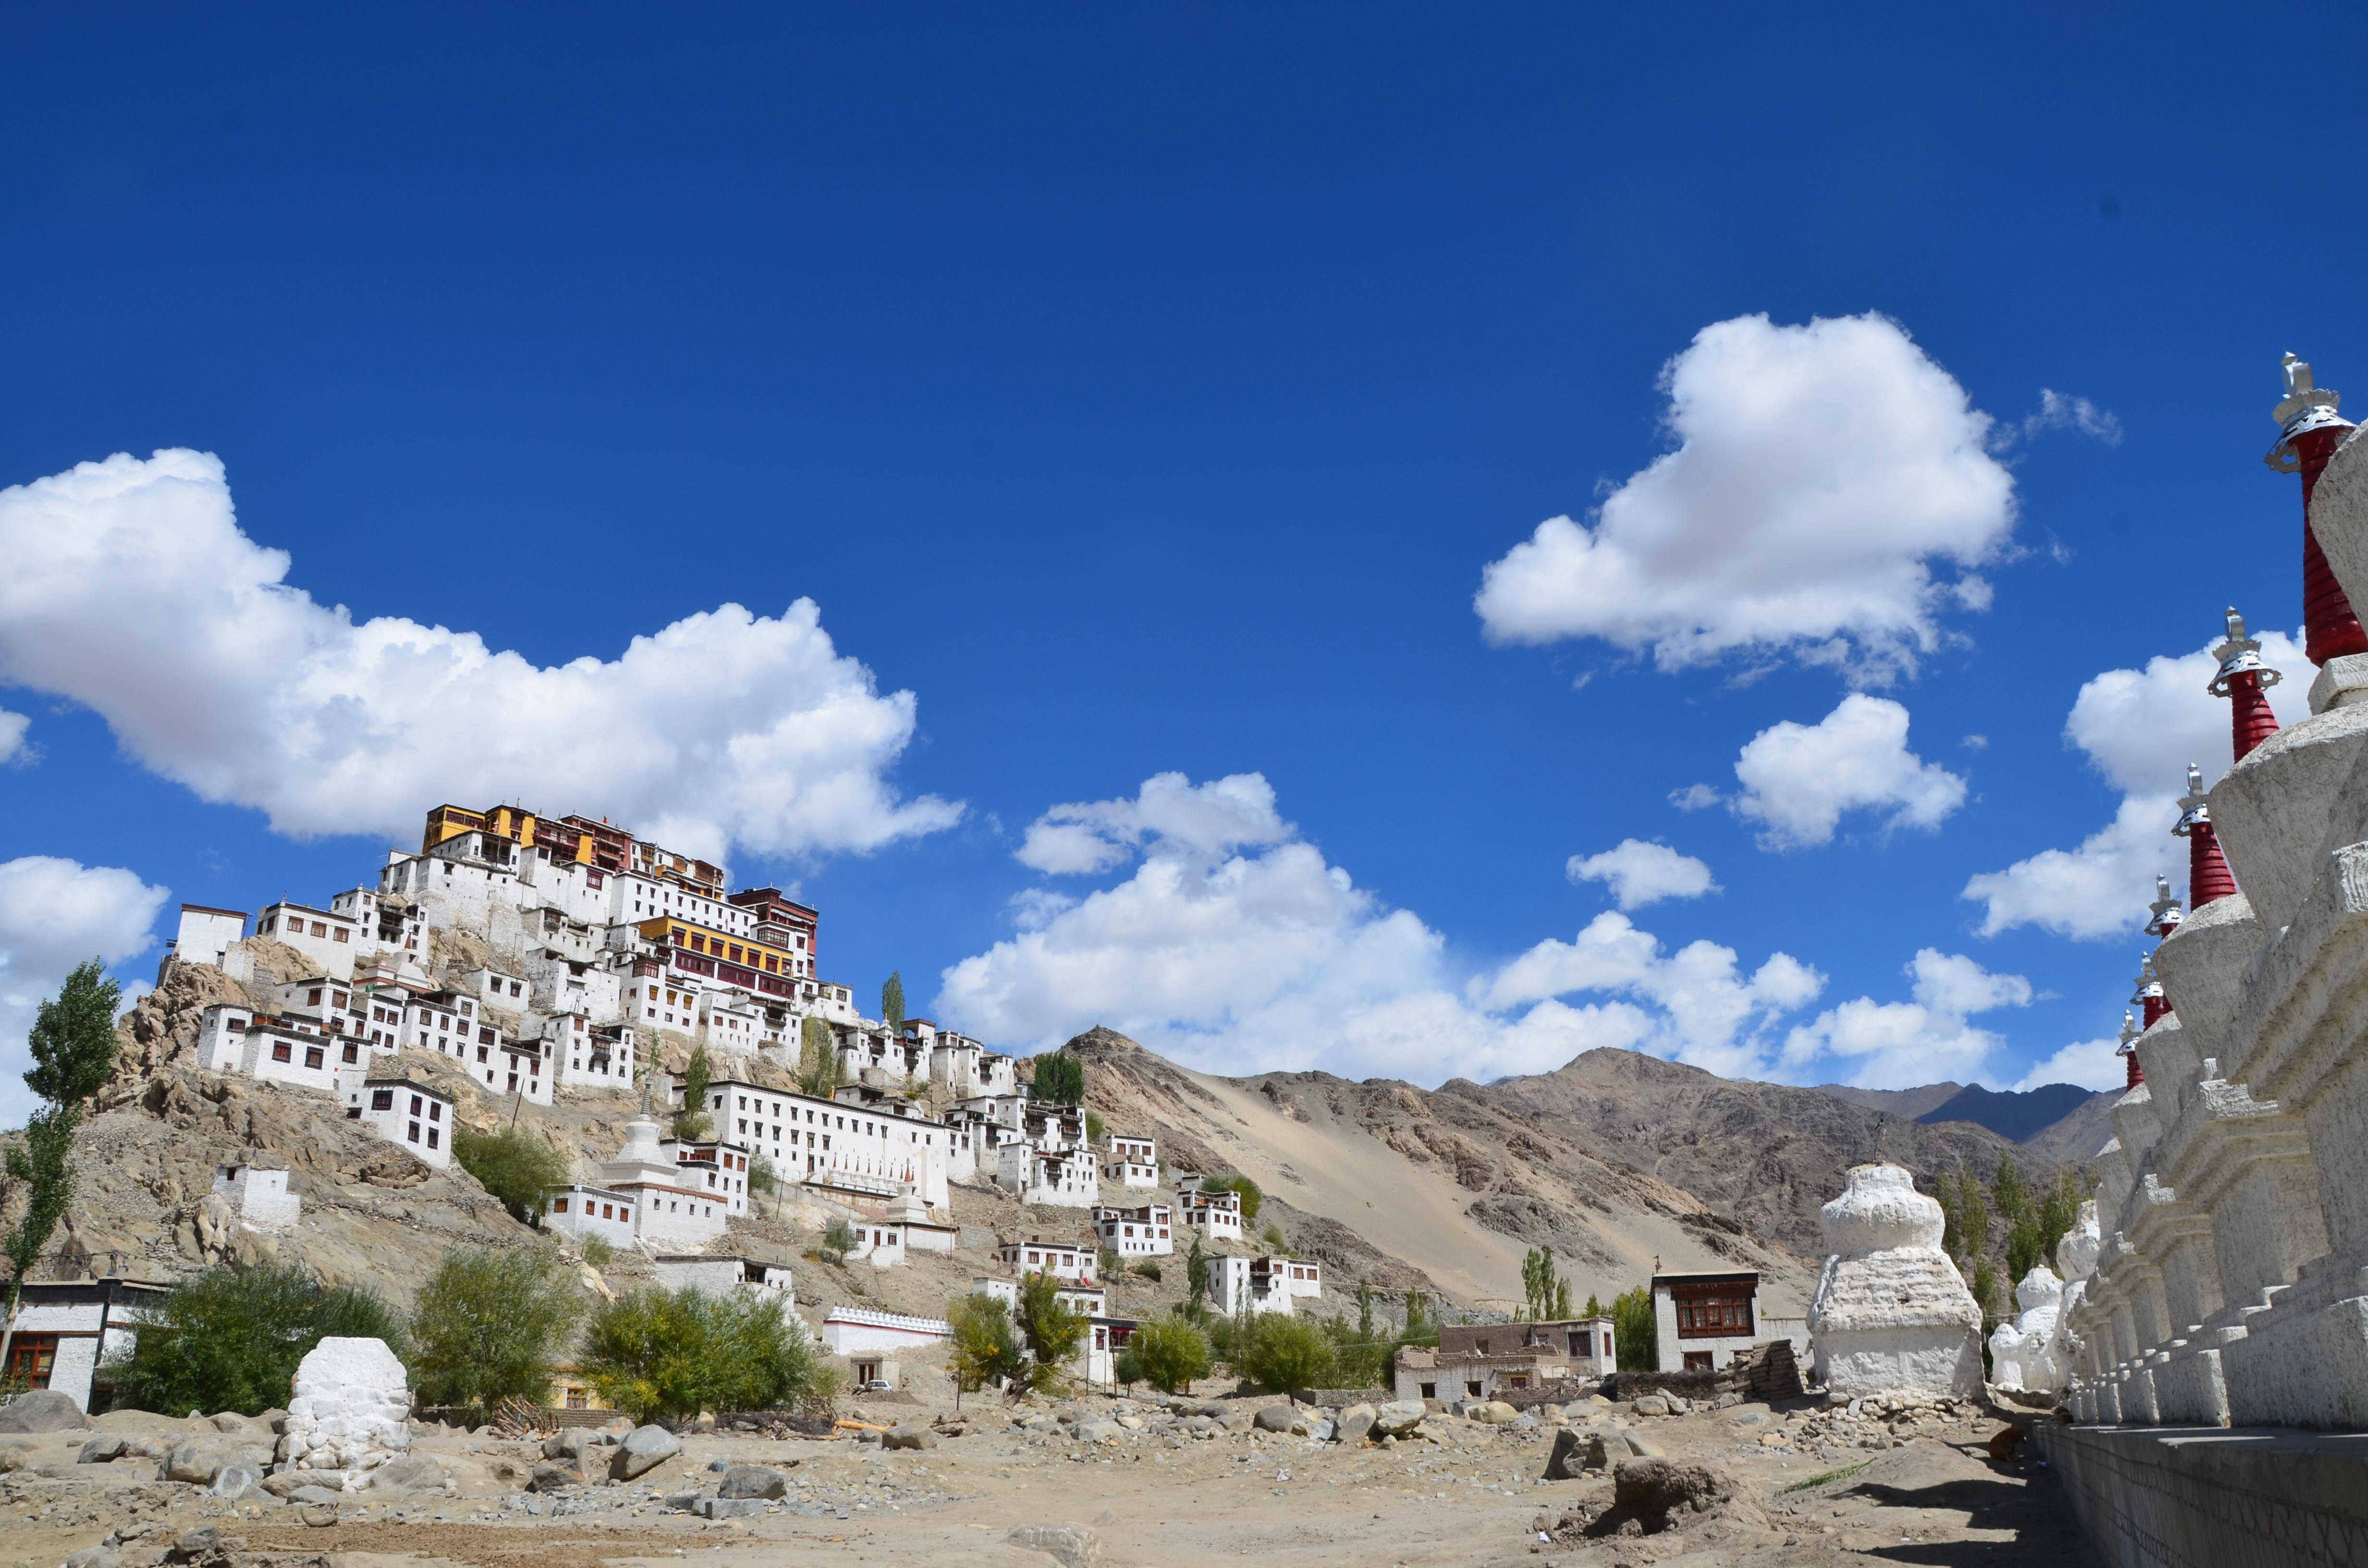 Индия - путеводитель. экономичный тур "экспедиция в западный тибет".  
долины куллу, лахул, ладакх. буддизм, индуизм, рерихи, урусвати, храмы, 
монастыри.        